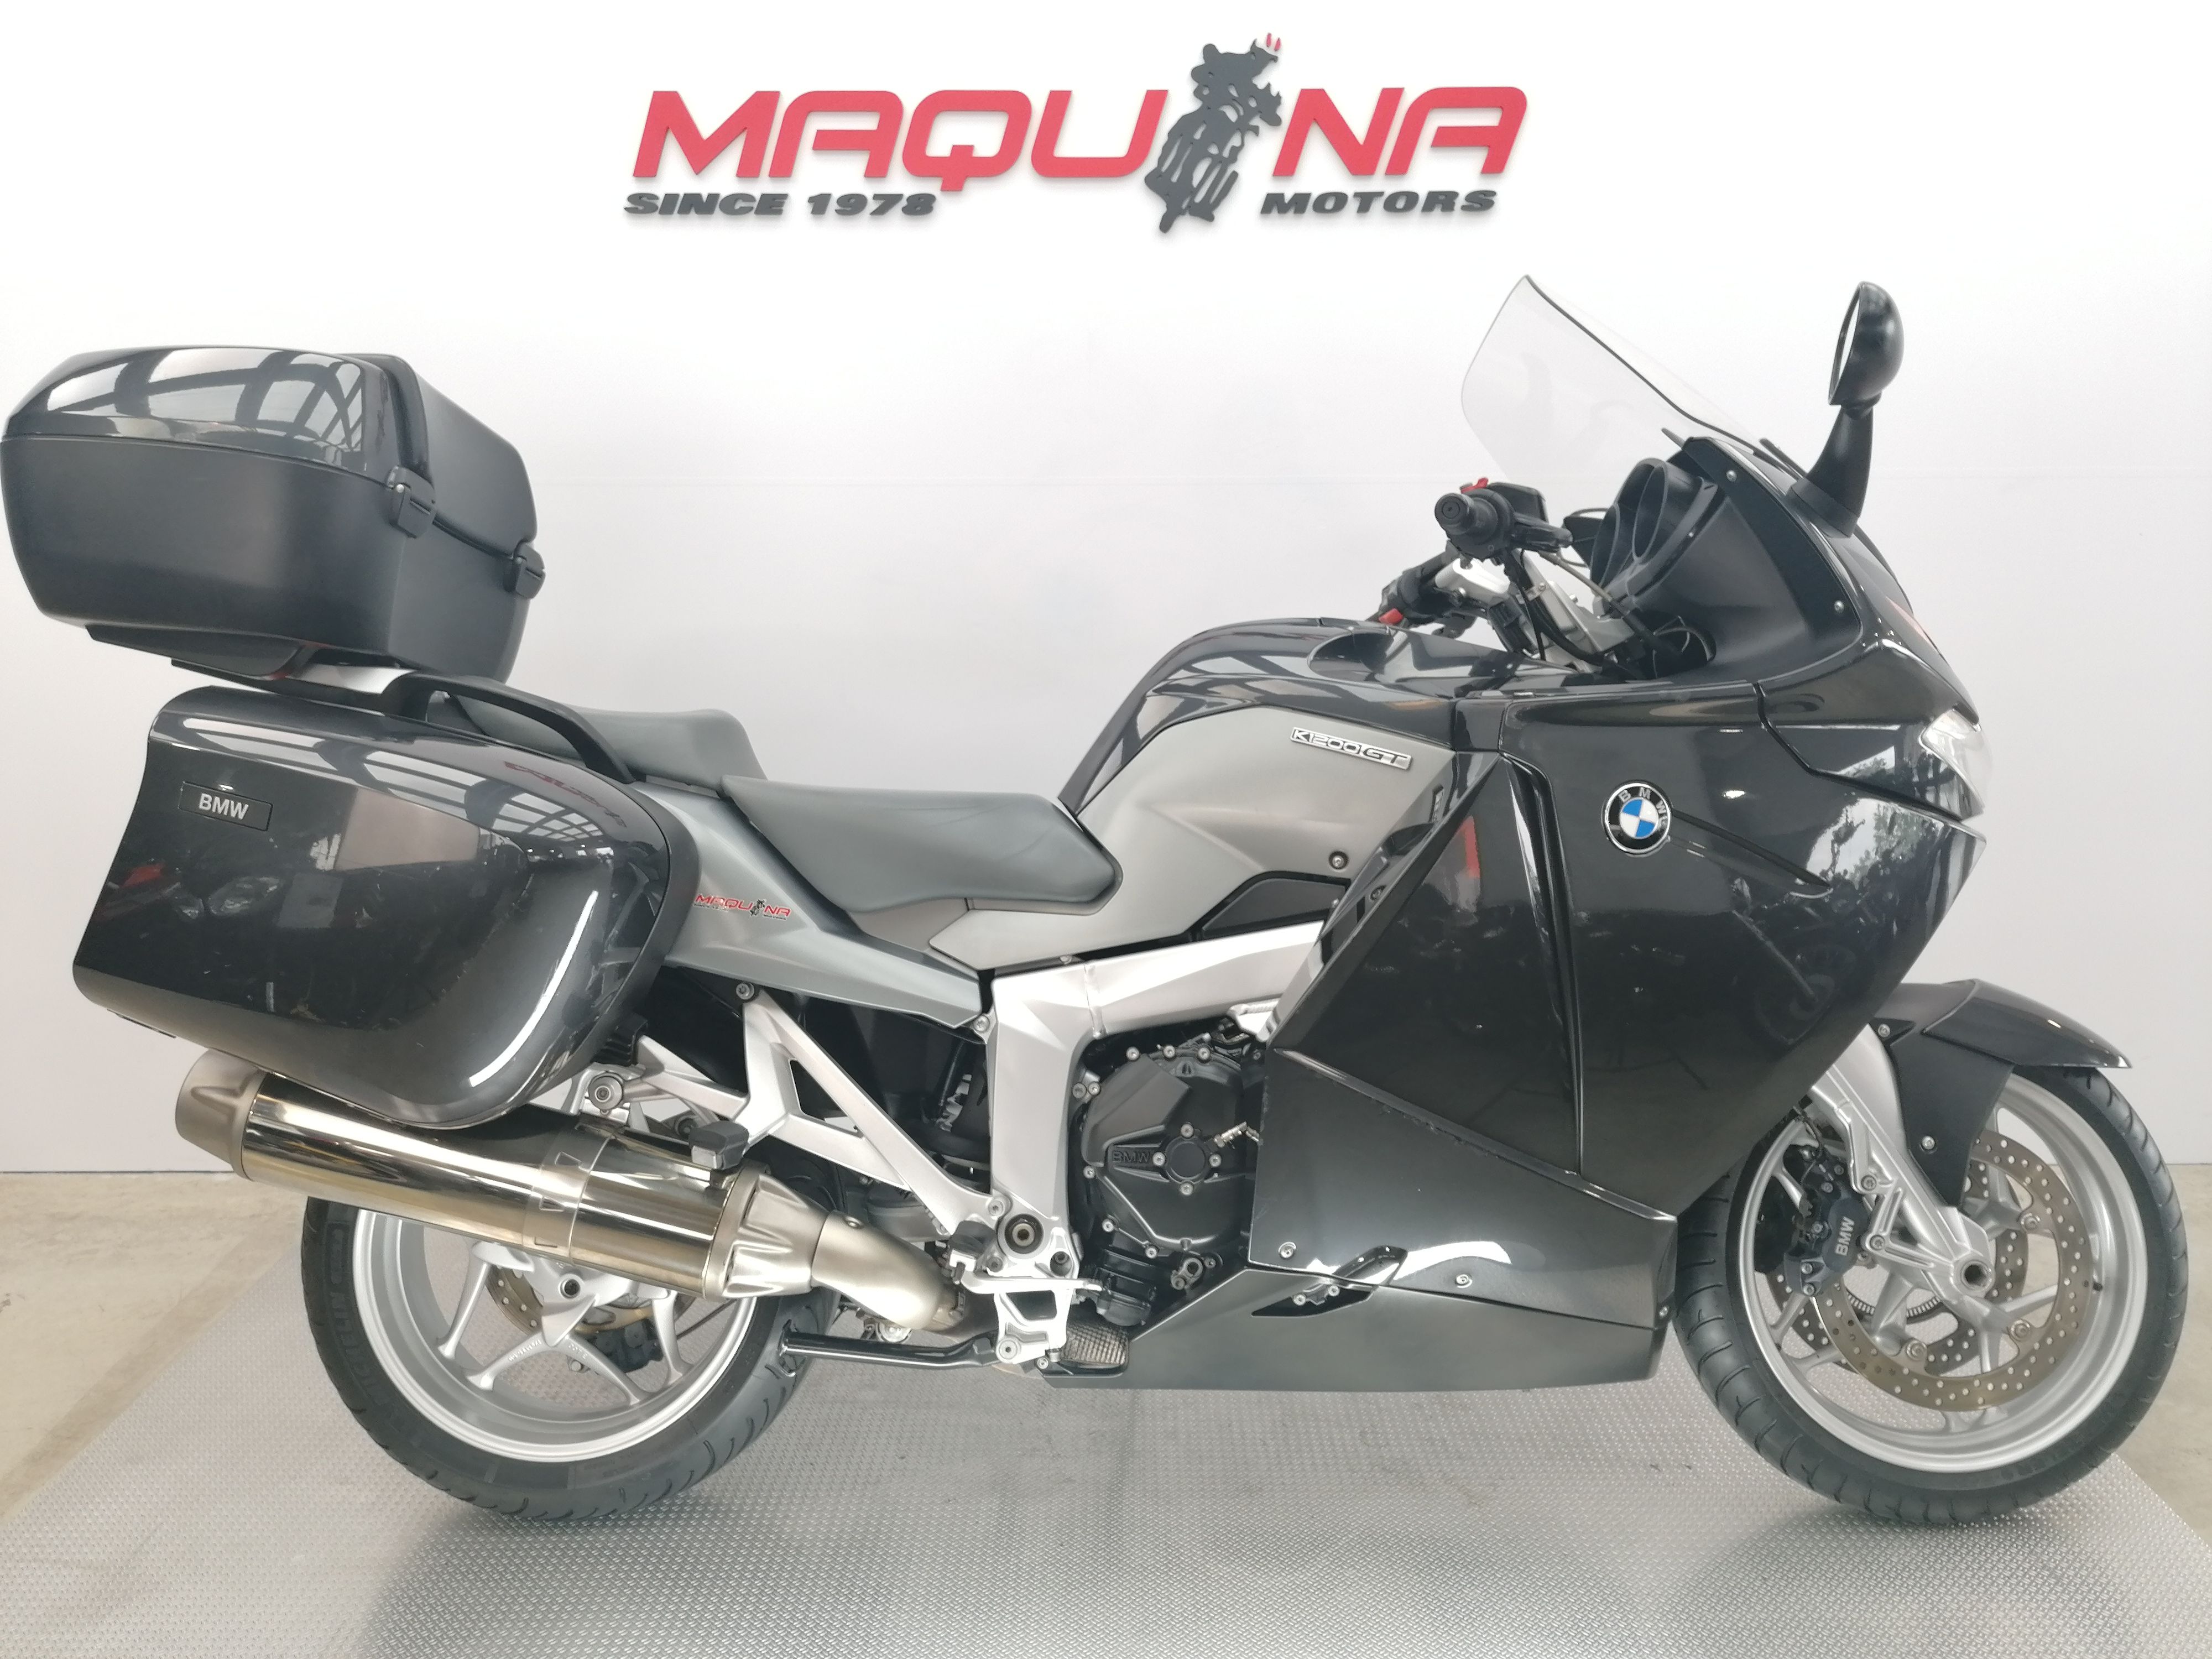 en frente de Descenso repentino Robar a BMW K 1200 GT – Maquina Motors motos ocasión